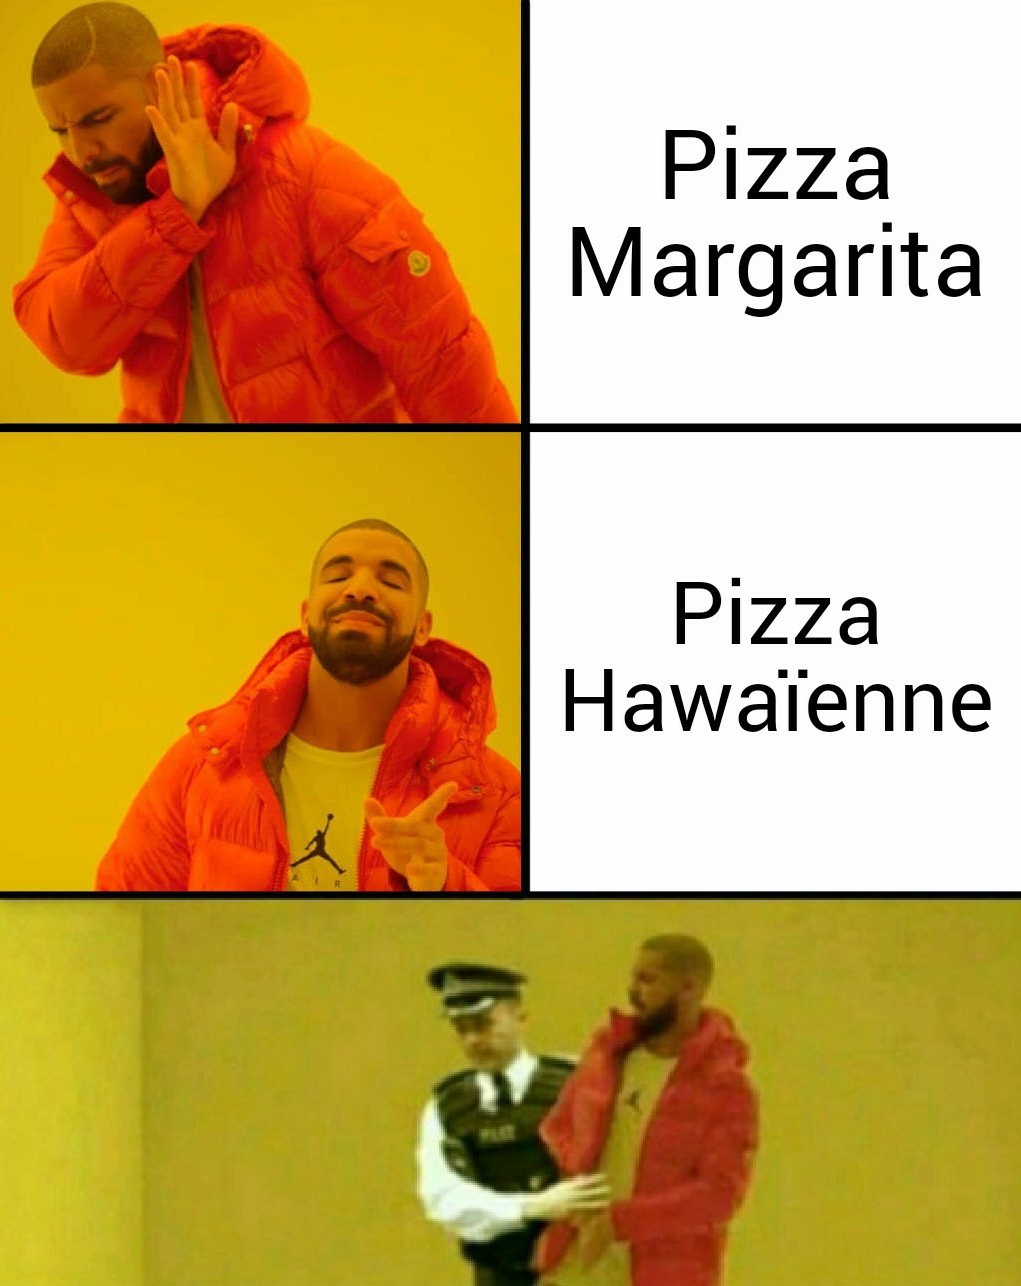 Les pizzas hawaïenne sont dégueulasses rien qu'au nom - meme